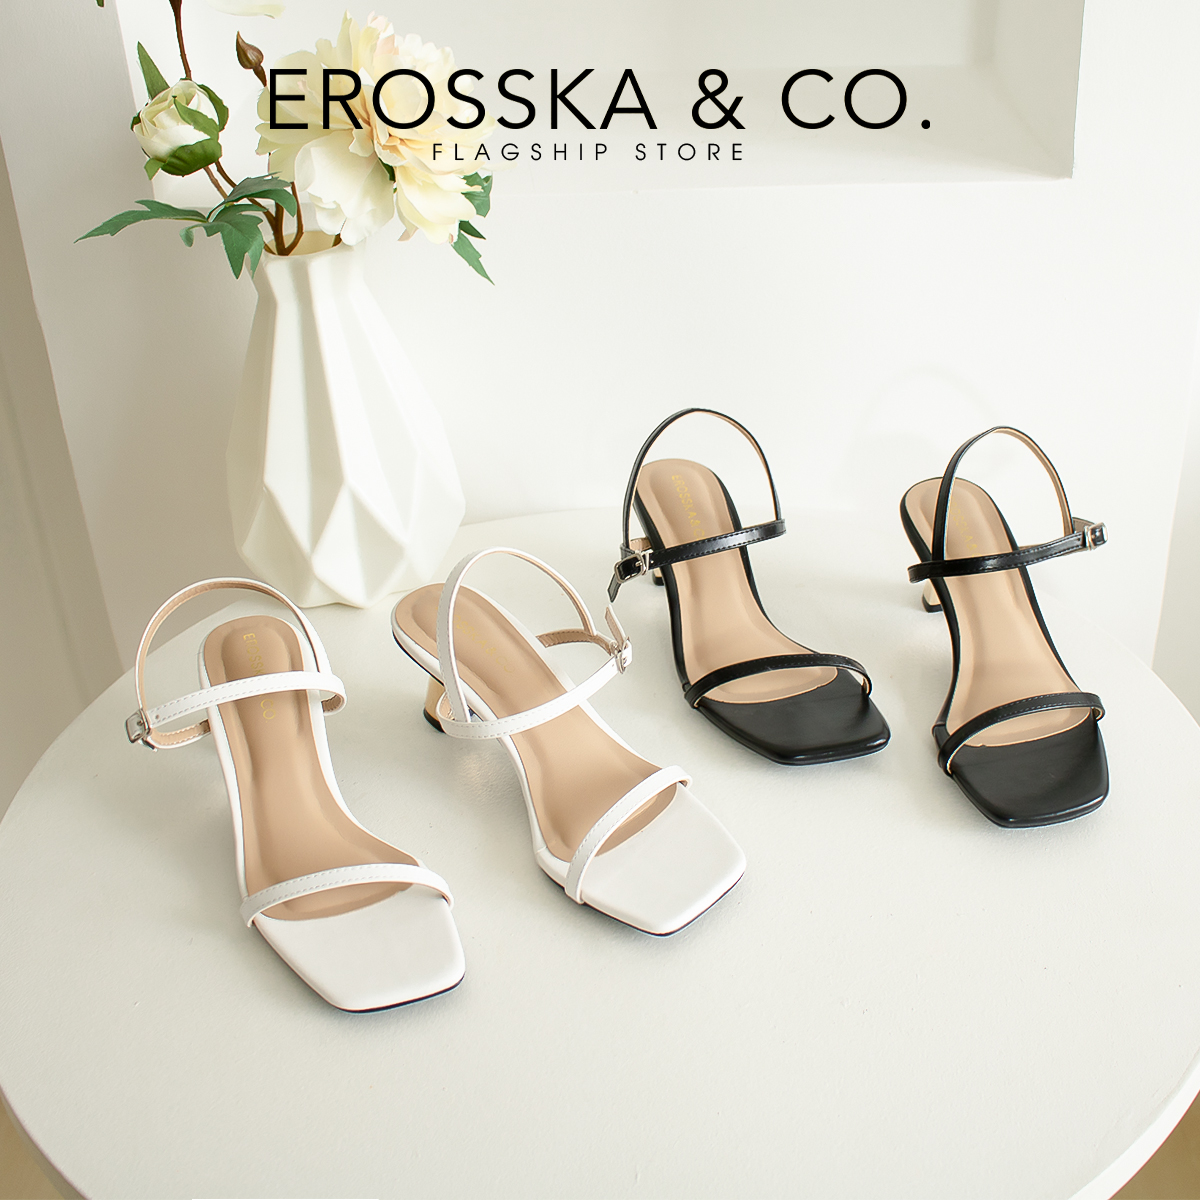 Erosska - Giày sandal cao gót nhọn kiểu dáng Hàn Quốc cao 5cm màu trắng _ EB046